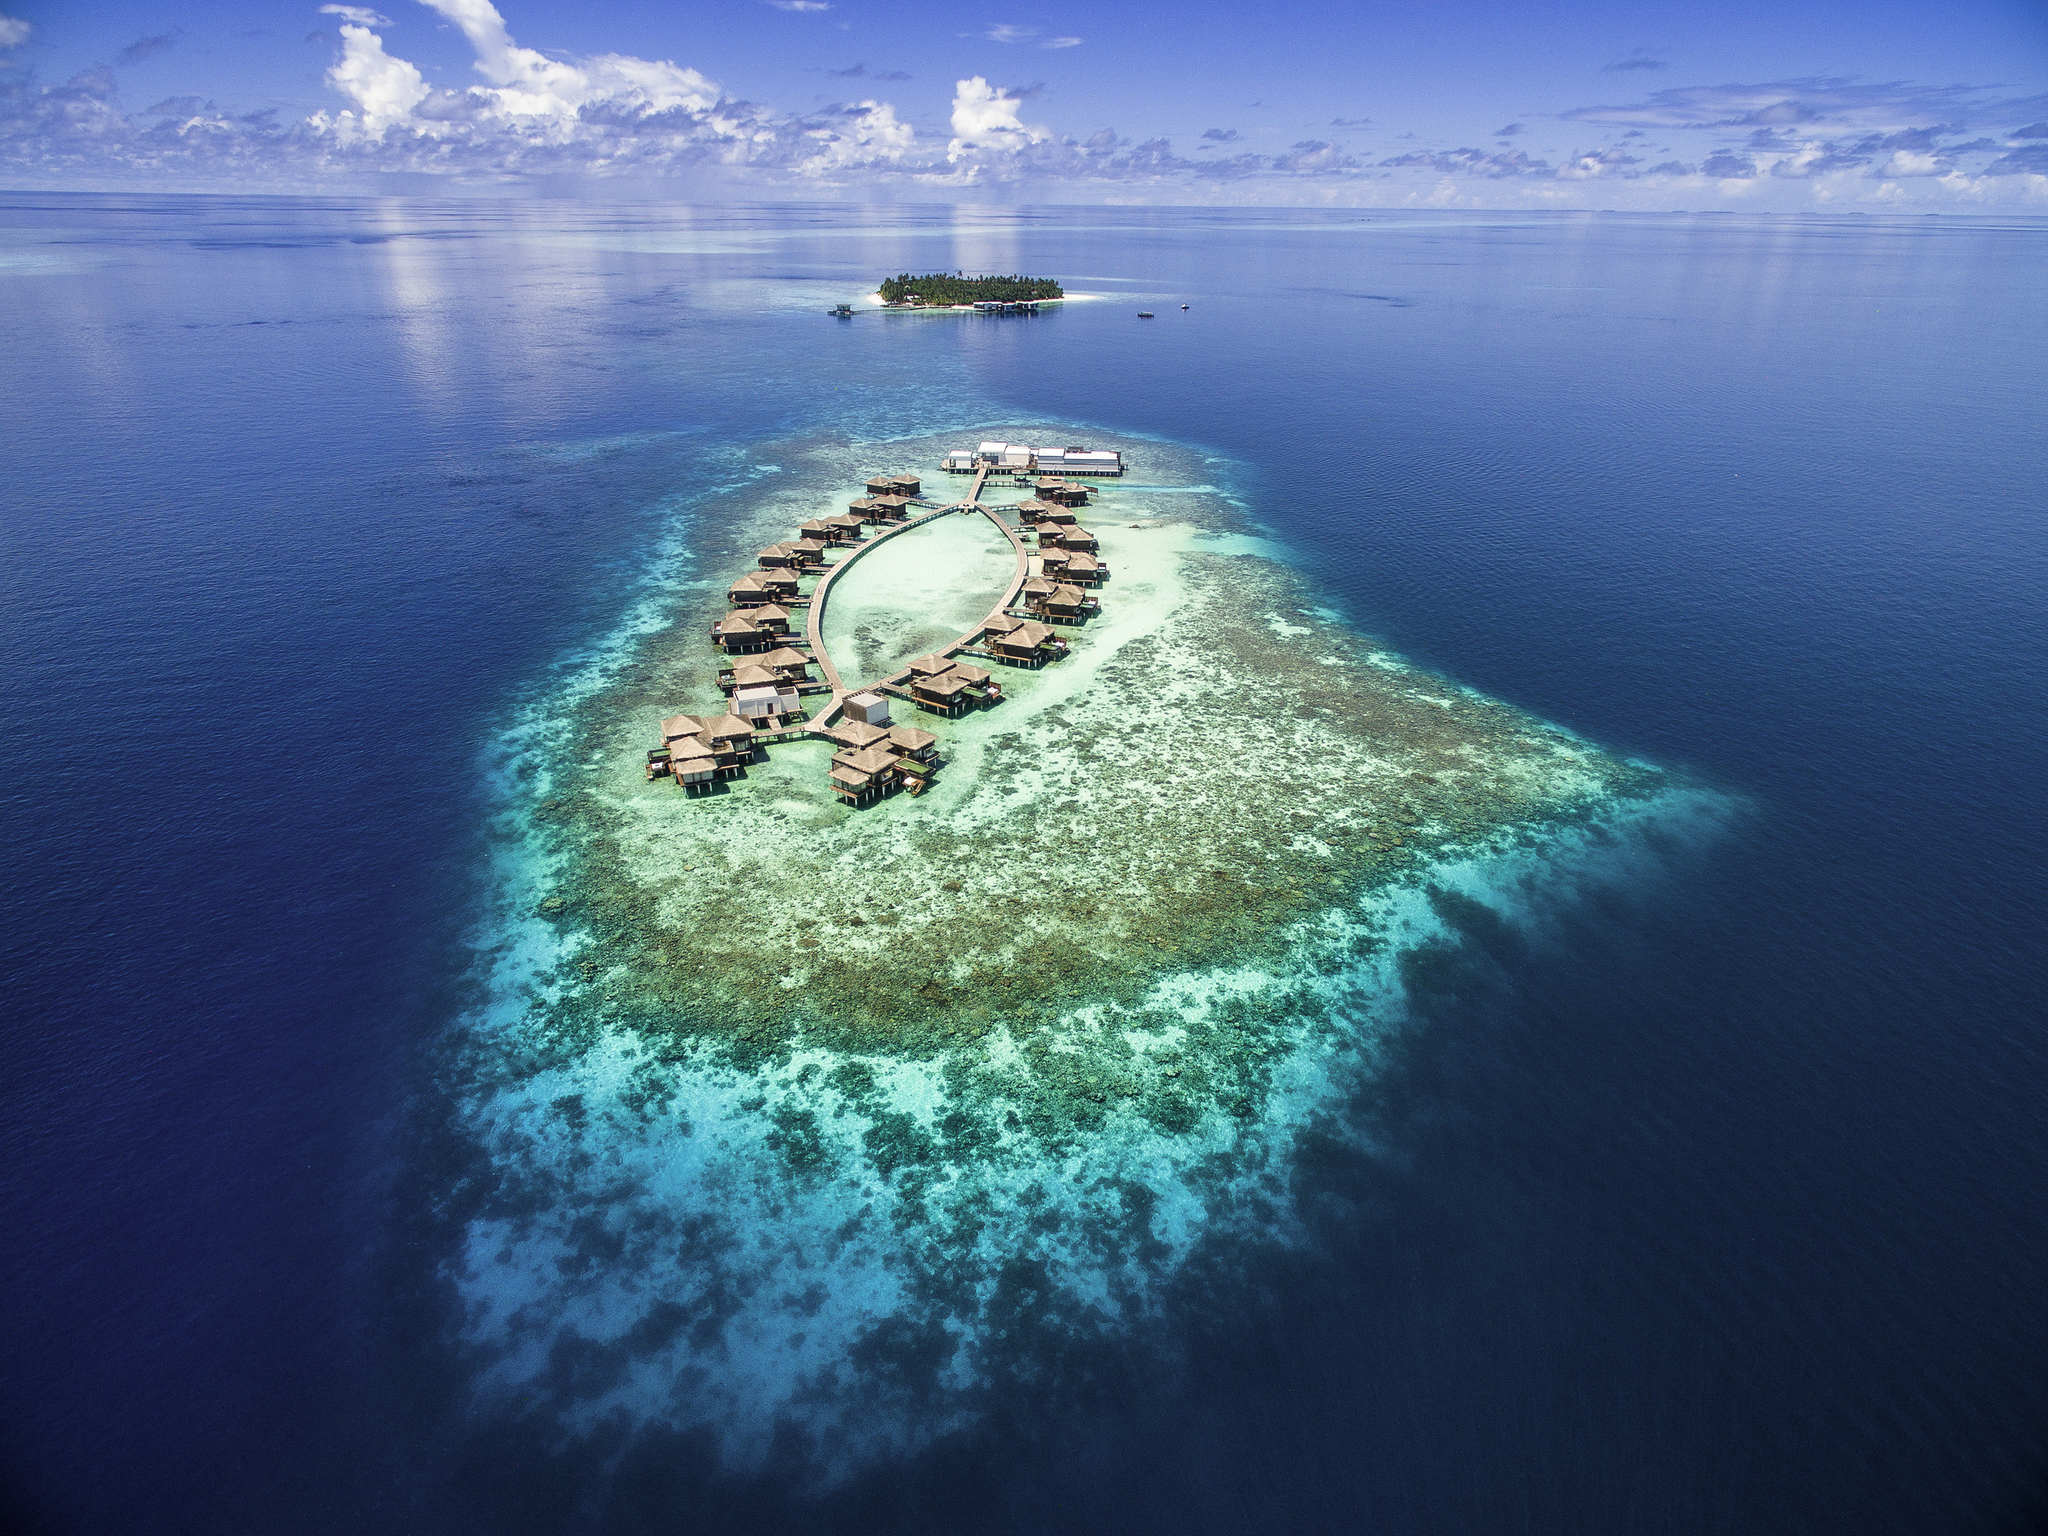 Dhevanafushi Maldives Luxury Resort